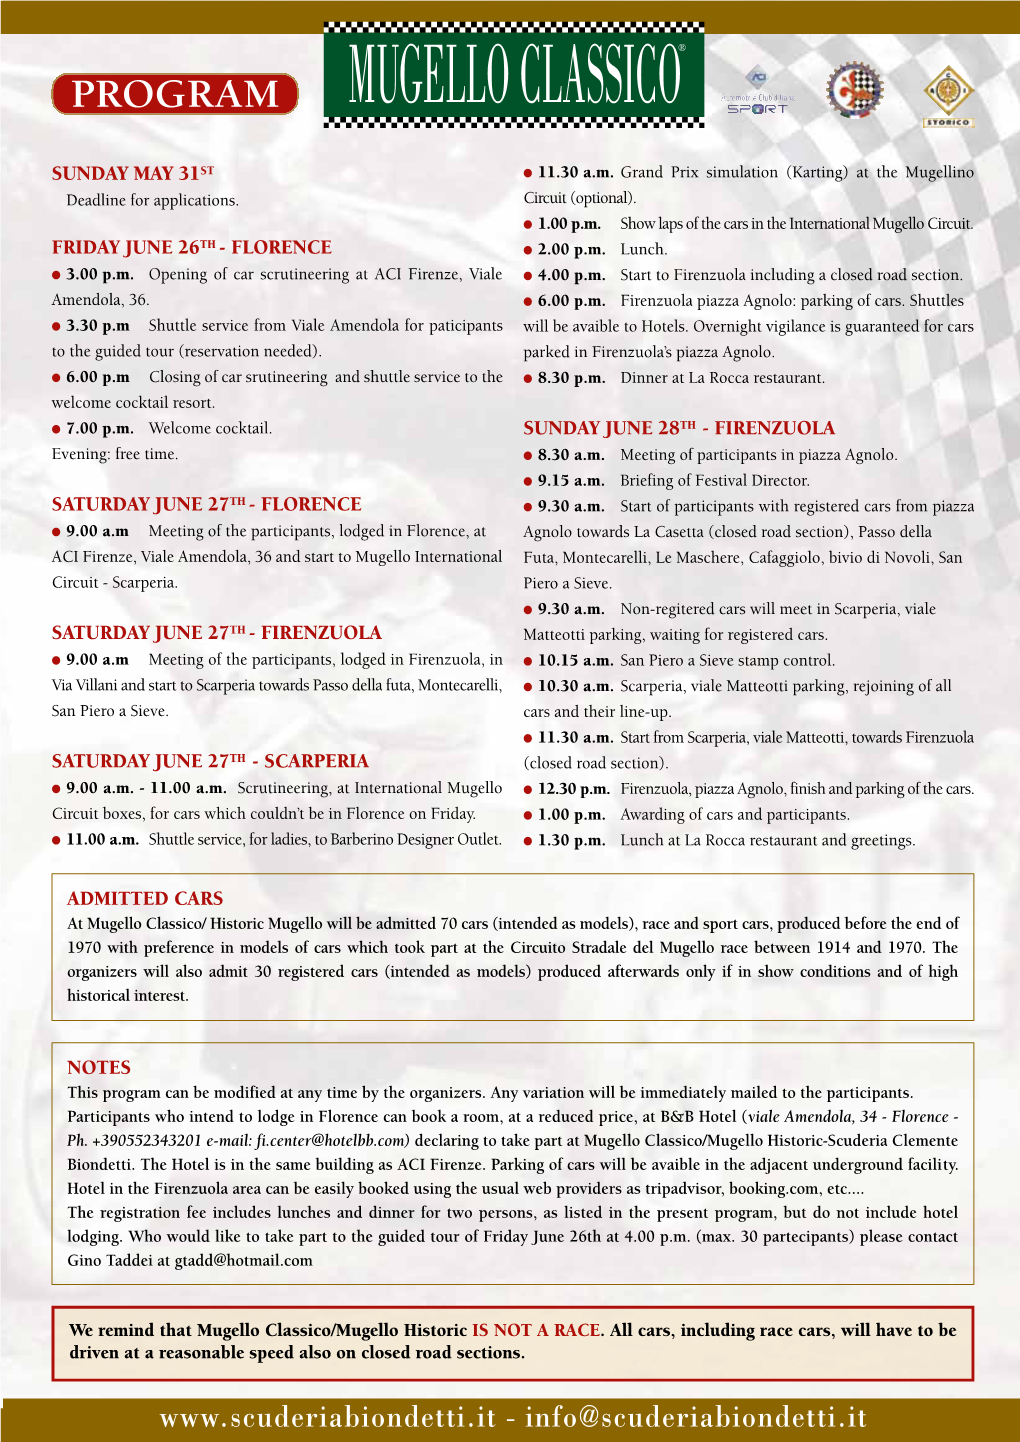 Programma Mugello 2015 Layout 1 08/05/15 10:04 Pagina 43